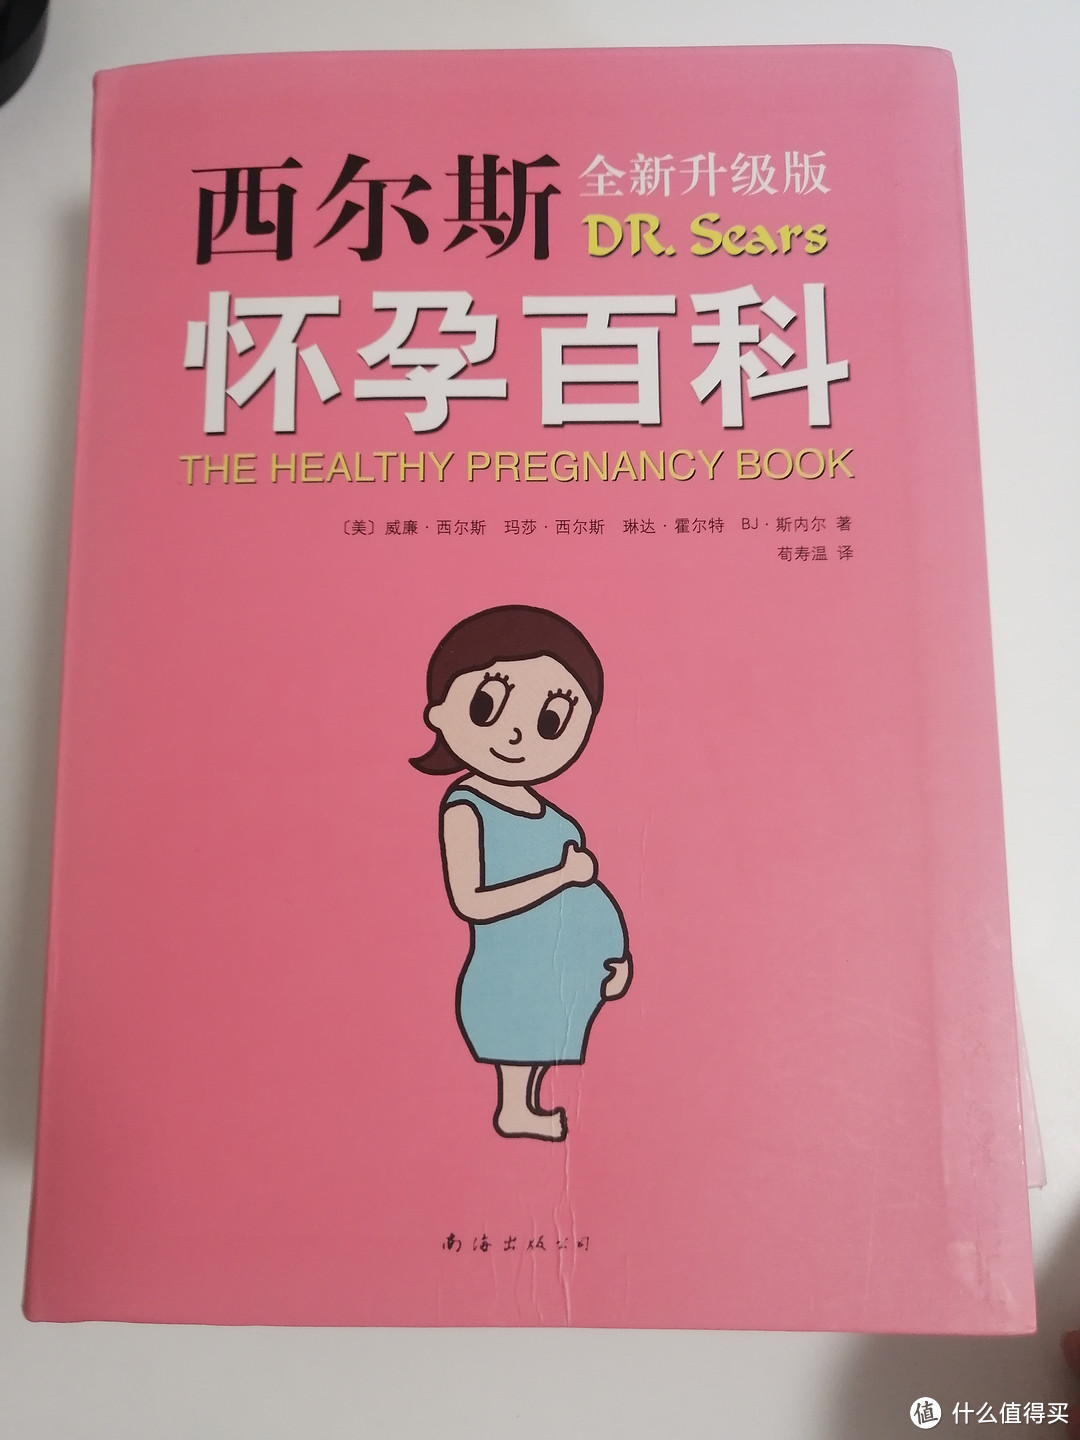 孕期必入的一套百科全书 | 西尔斯怀孕百科+西尔斯亲密育儿百科